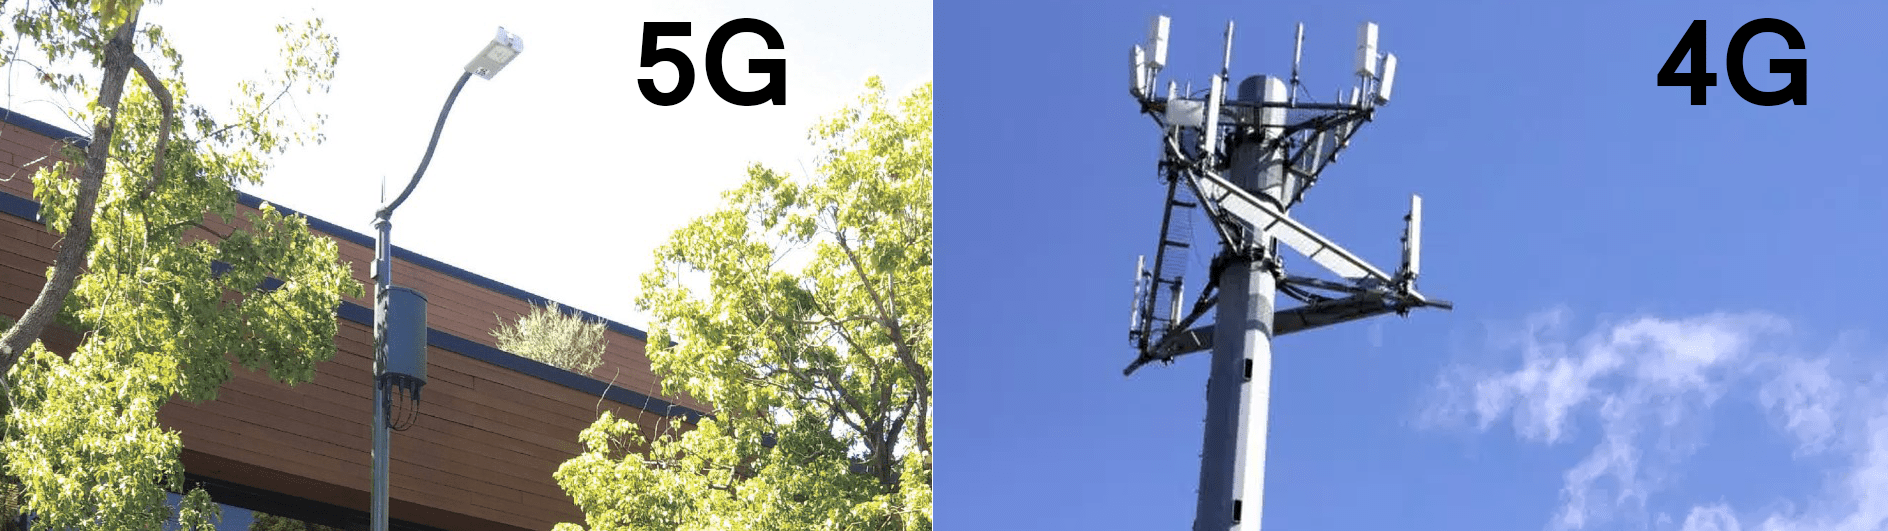 5G против сотовой вышки 4G